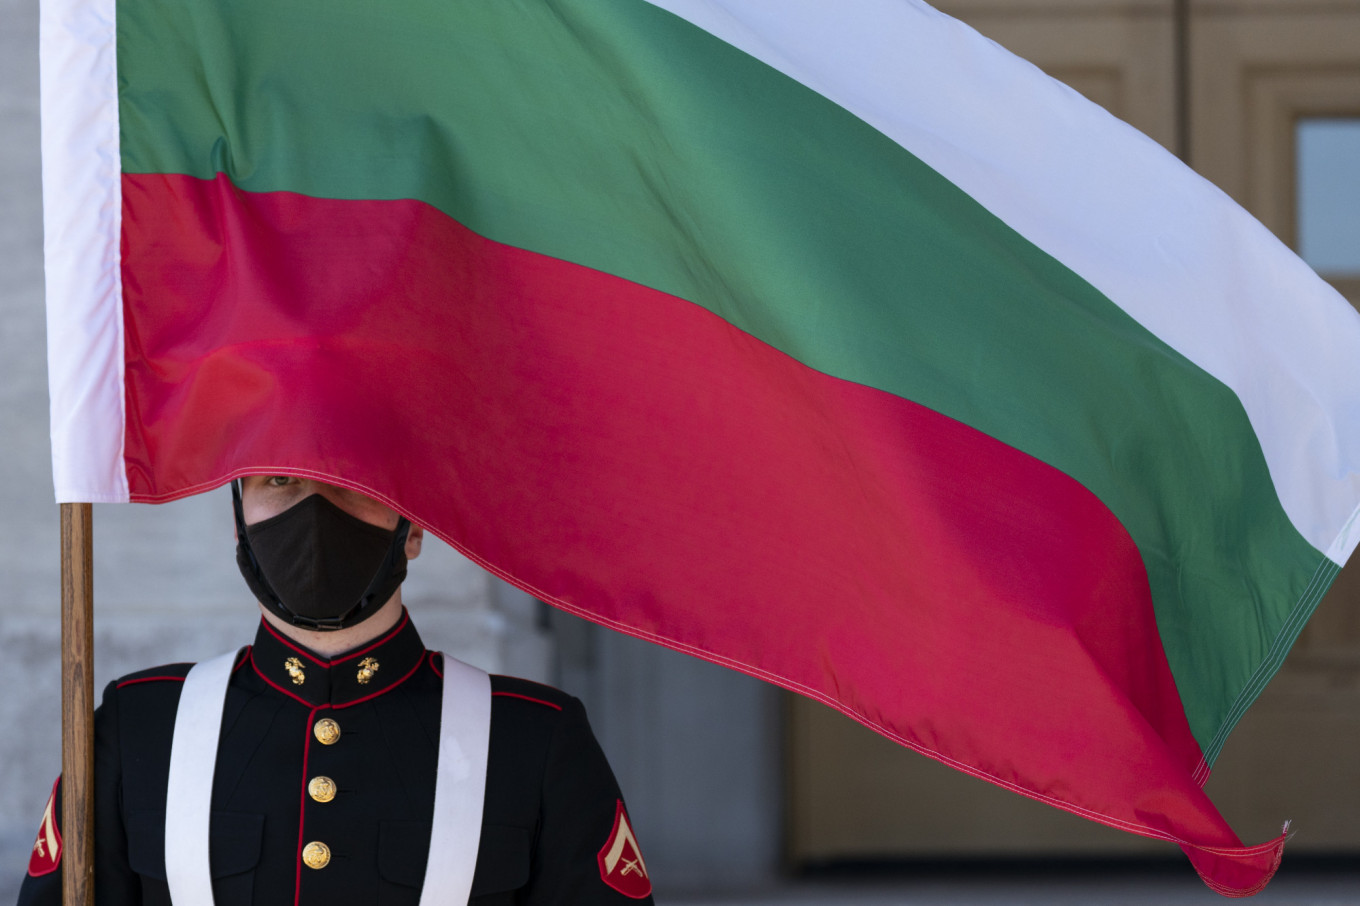 Η Ρωσία προχώρησε σήμερα στην απέλαση δύο  βούλγαρων διπλωματών στην Μόσχα